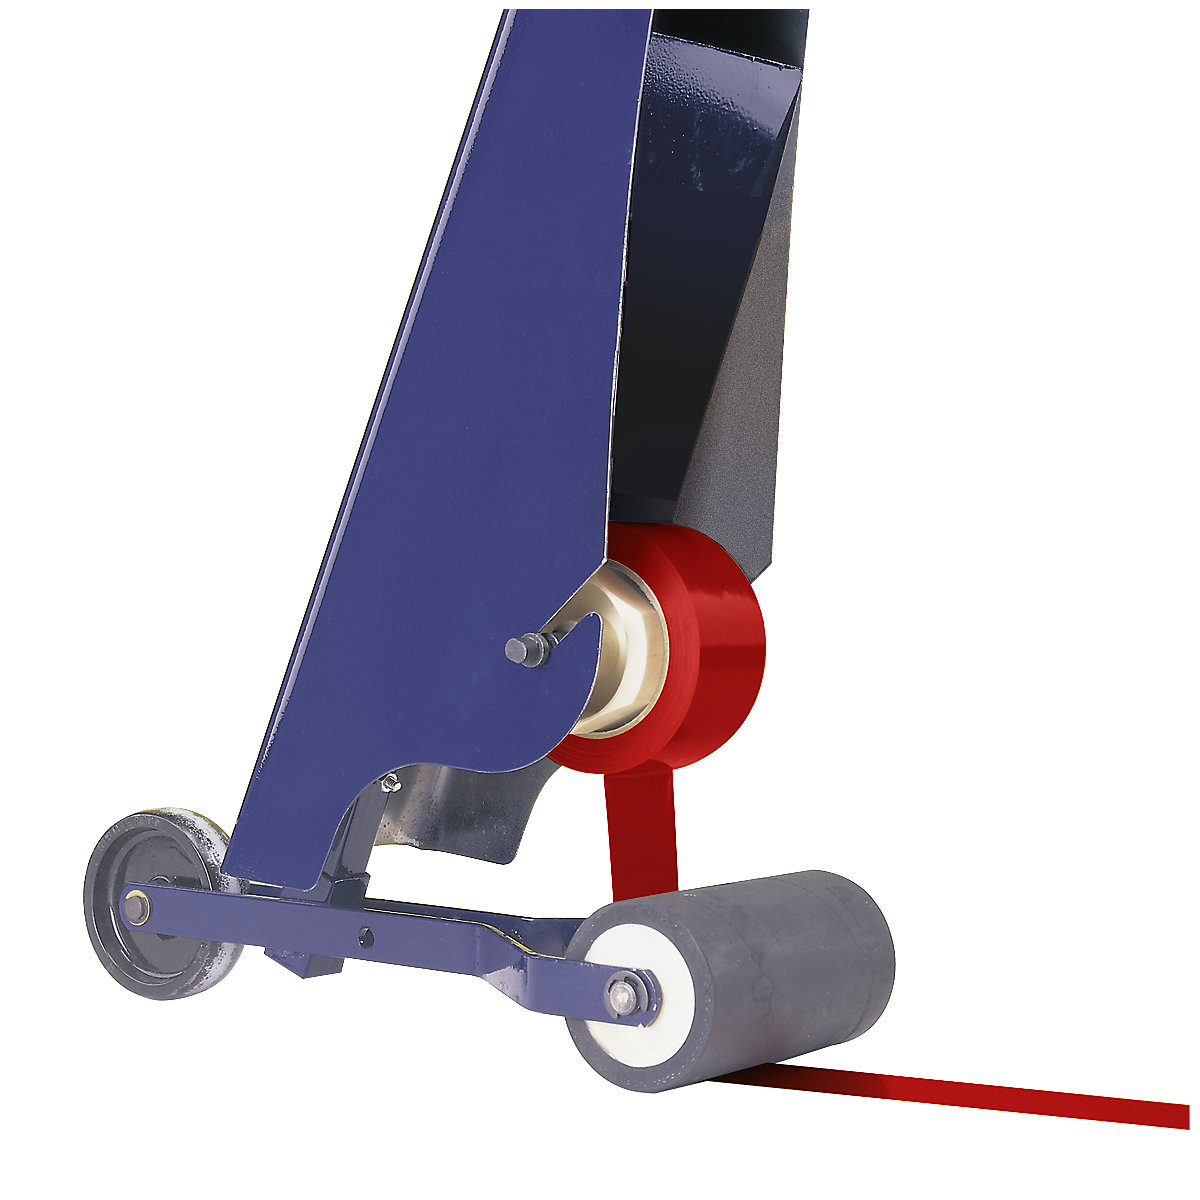 Conjunto de marcação, aparelho de marcação para pavimentos e fita de marcação para chão, cor da fita vermelho-6